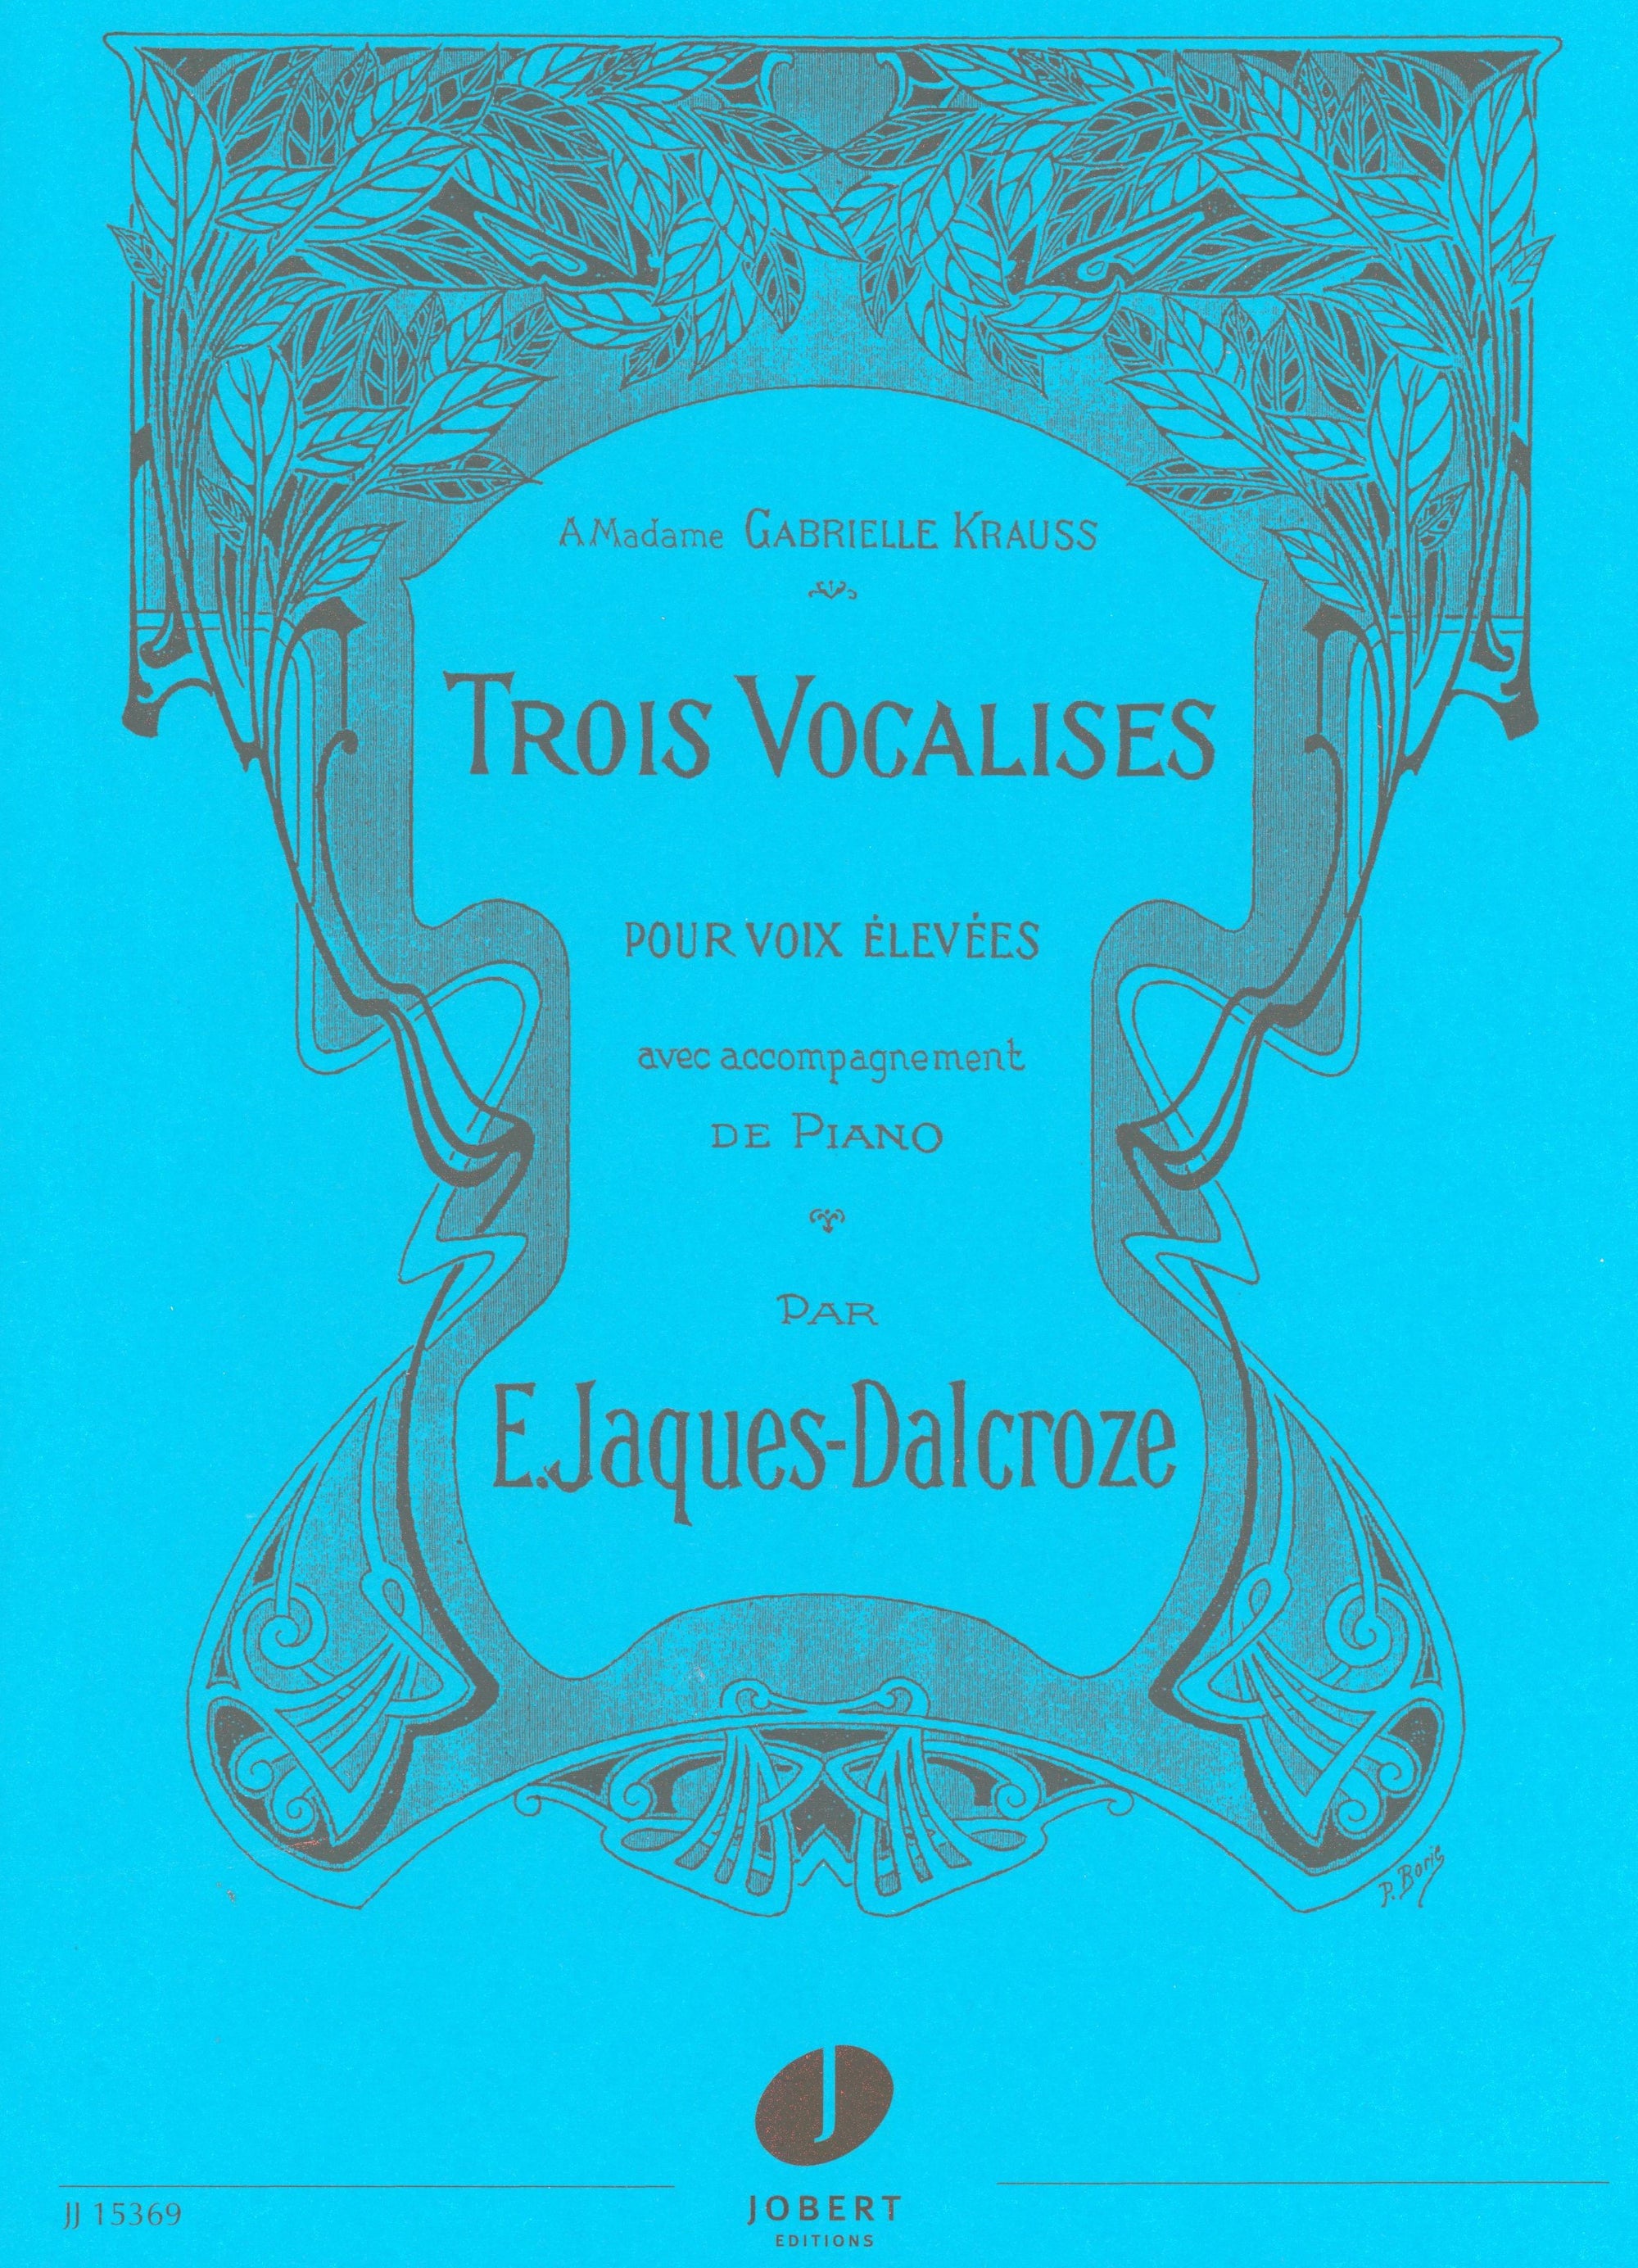 Jaques-Dalcroze: 3 Vocalises